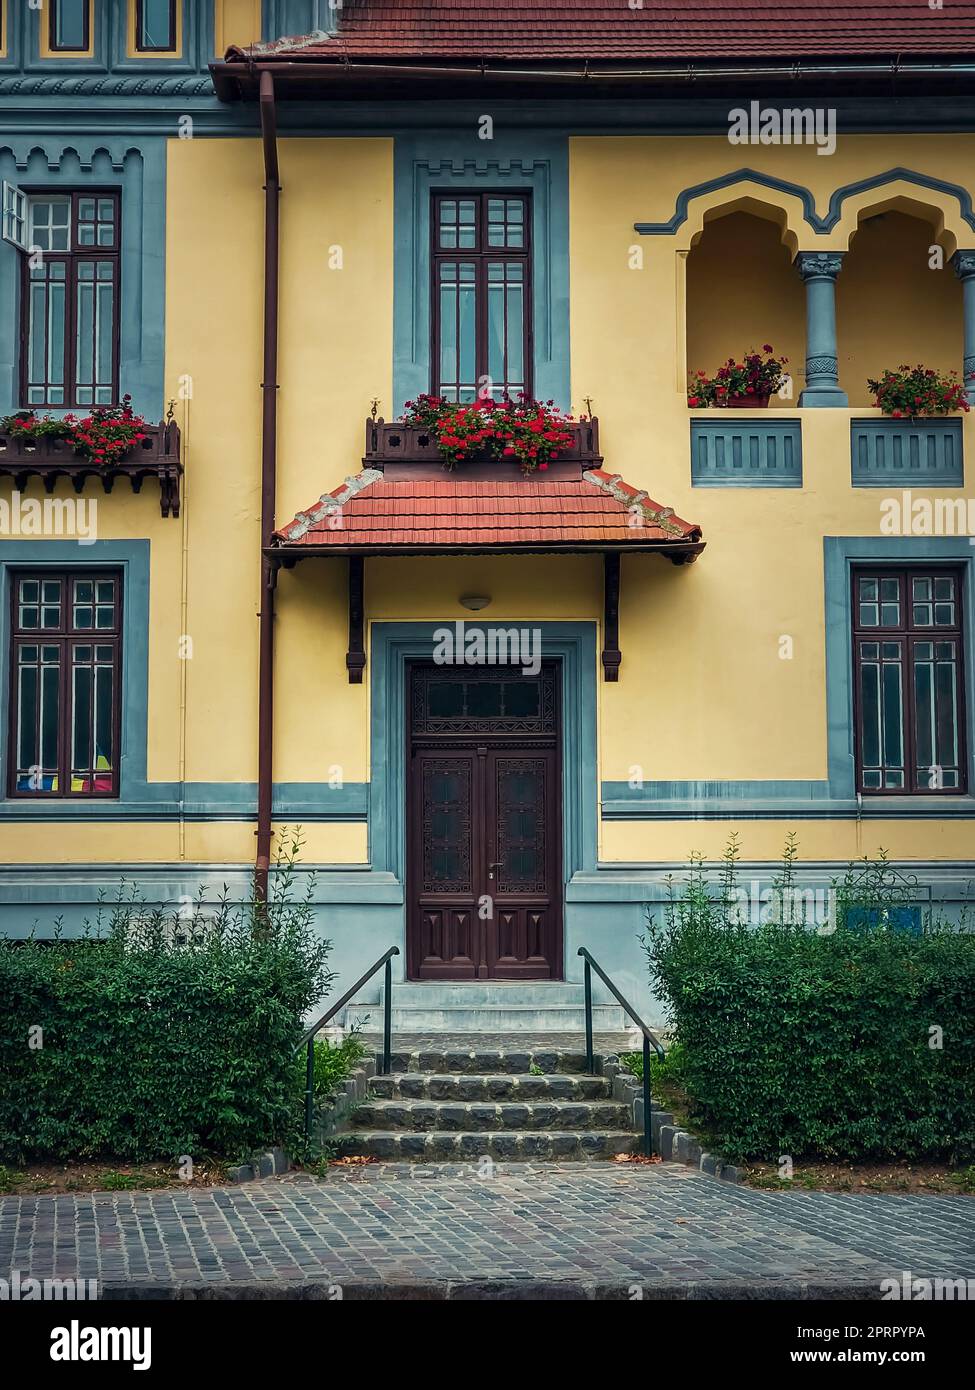 Façade de maison colorée, style vintage avec porche rétro et auvent. Extérieur d'un bâtiment européen traditionnel, vue de face à la porte d'entrée Banque D'Images